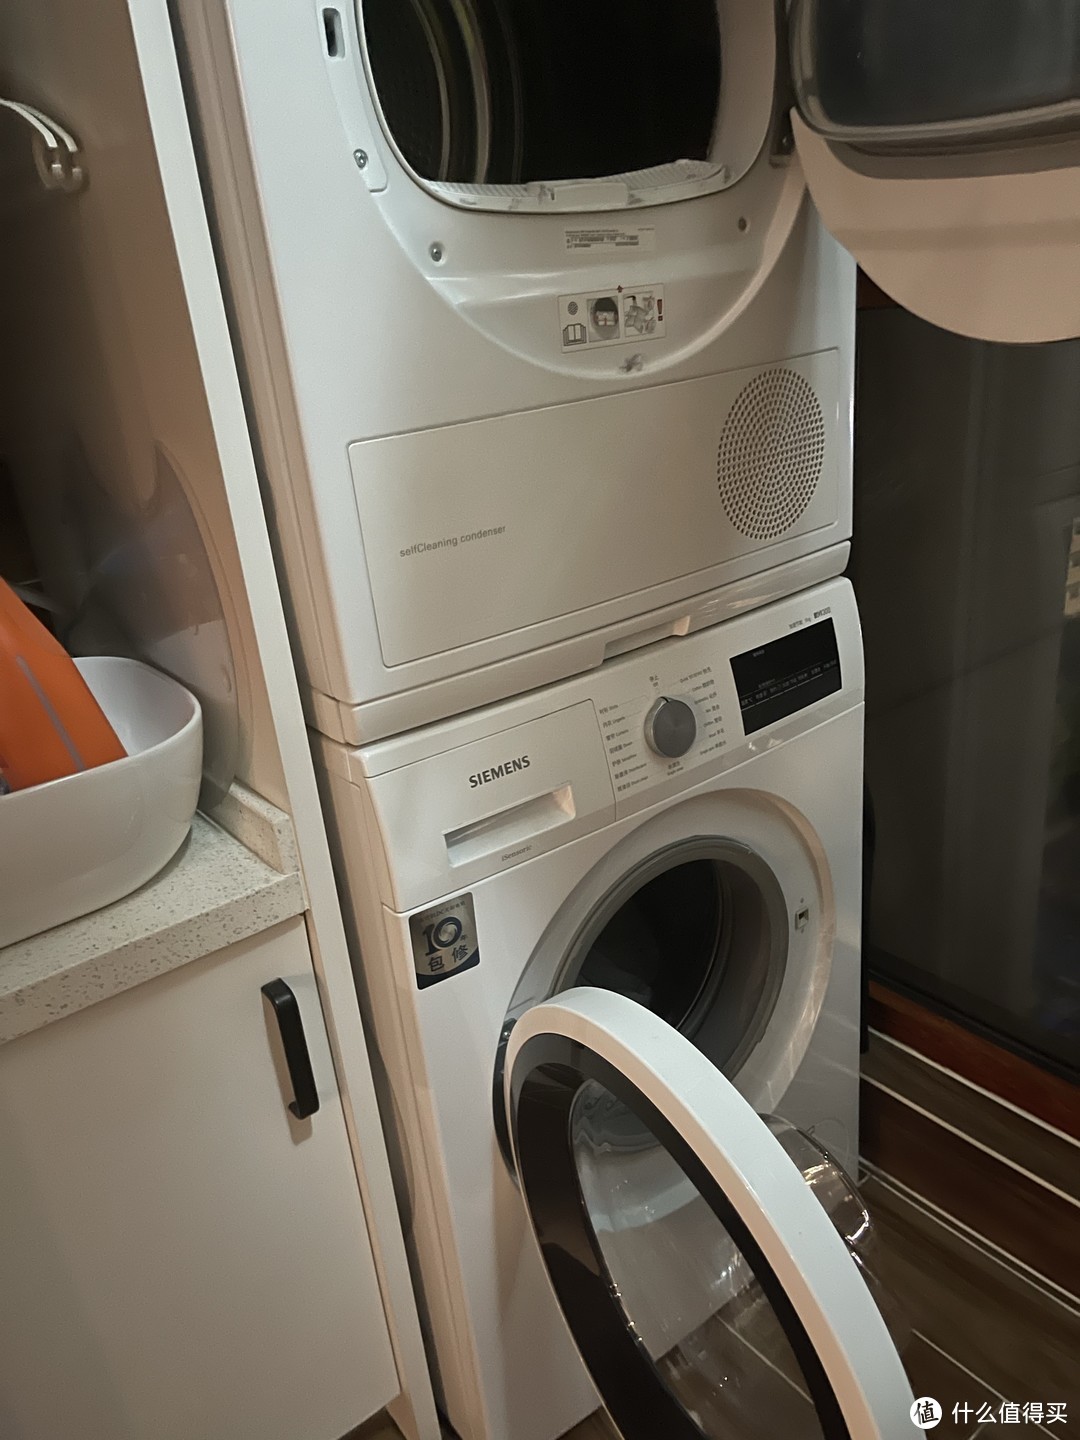 家里两台洗衣机，一台烘干机，他们的养护维护可不能马虎哦。要下很多功夫